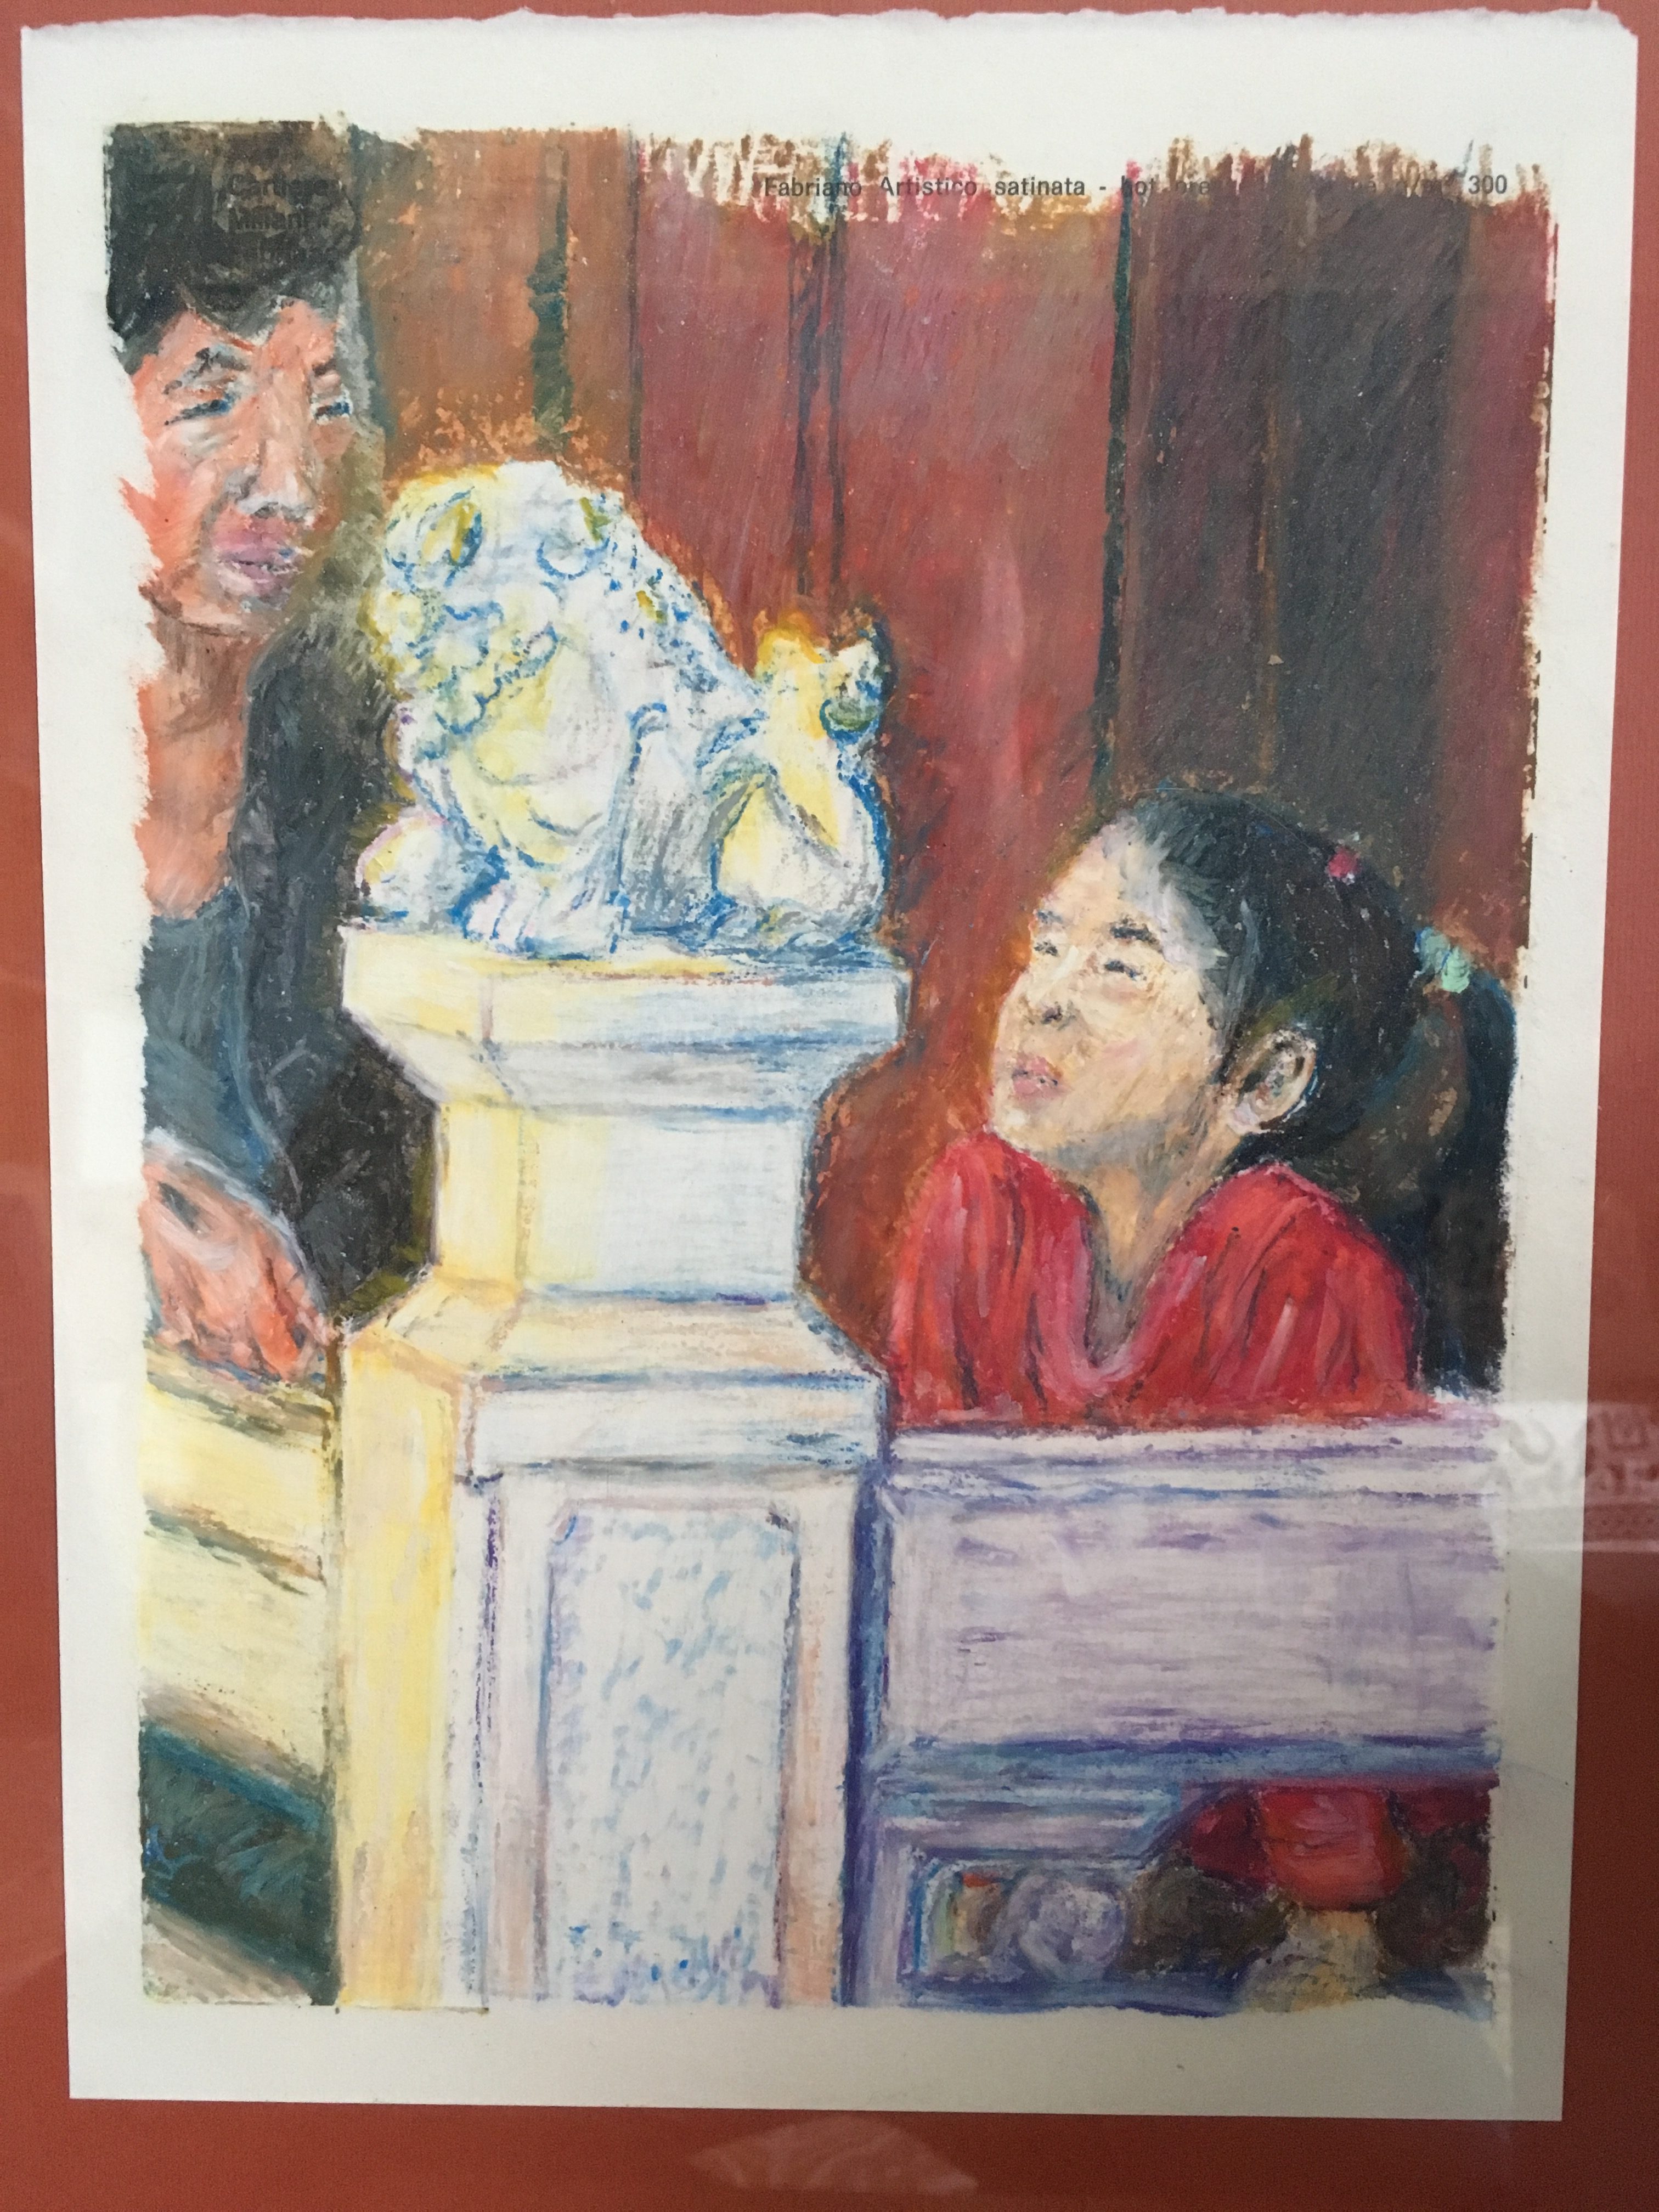 Bambina e sua nonna. Pastelli ad olio su carta artistica fabriano satinata da 300gr., cm. 30 x 40 circa.